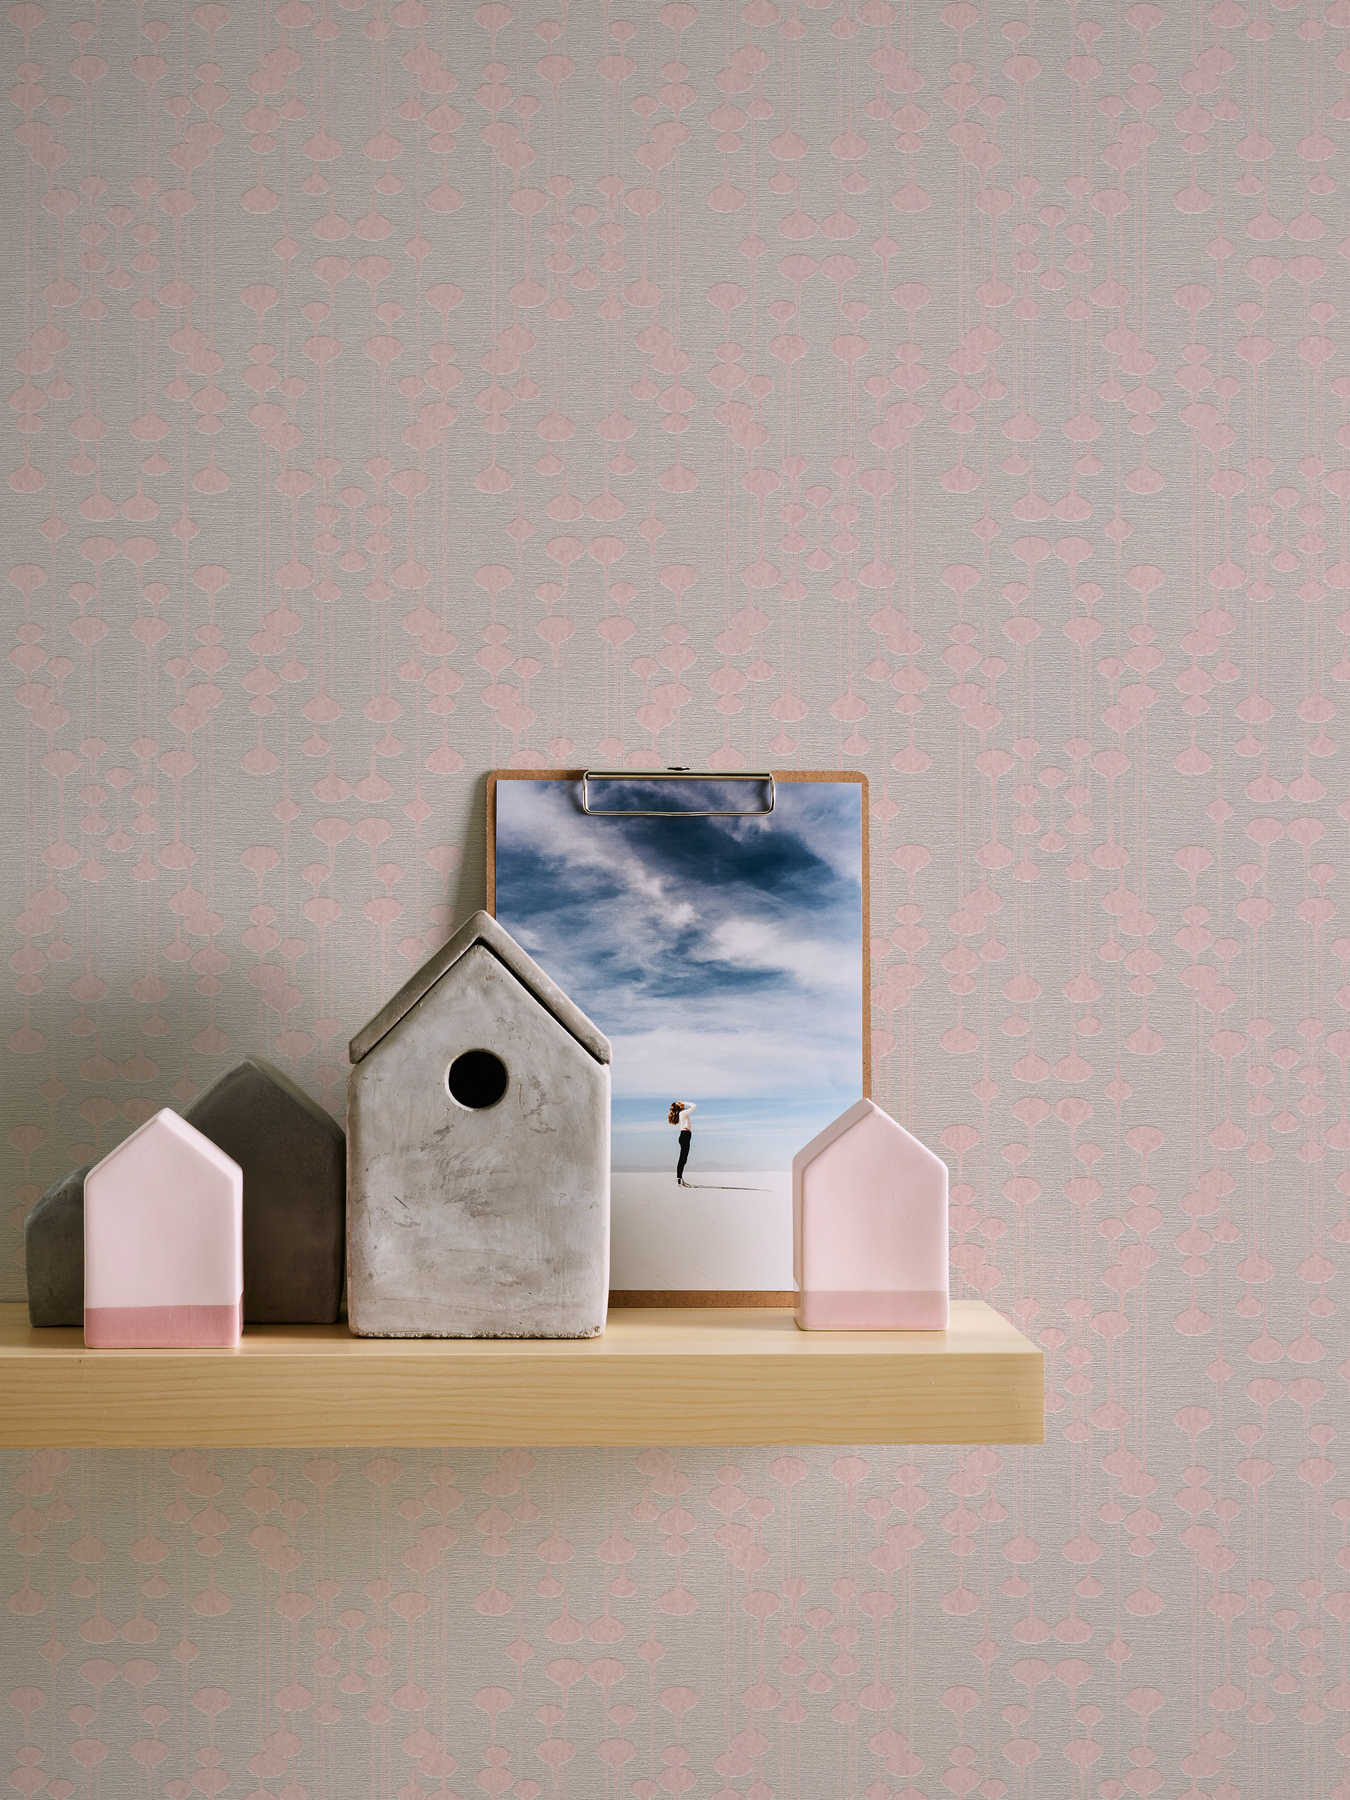             Retro wallpaper non-woven, matt & gloss effect - beige, pink
        